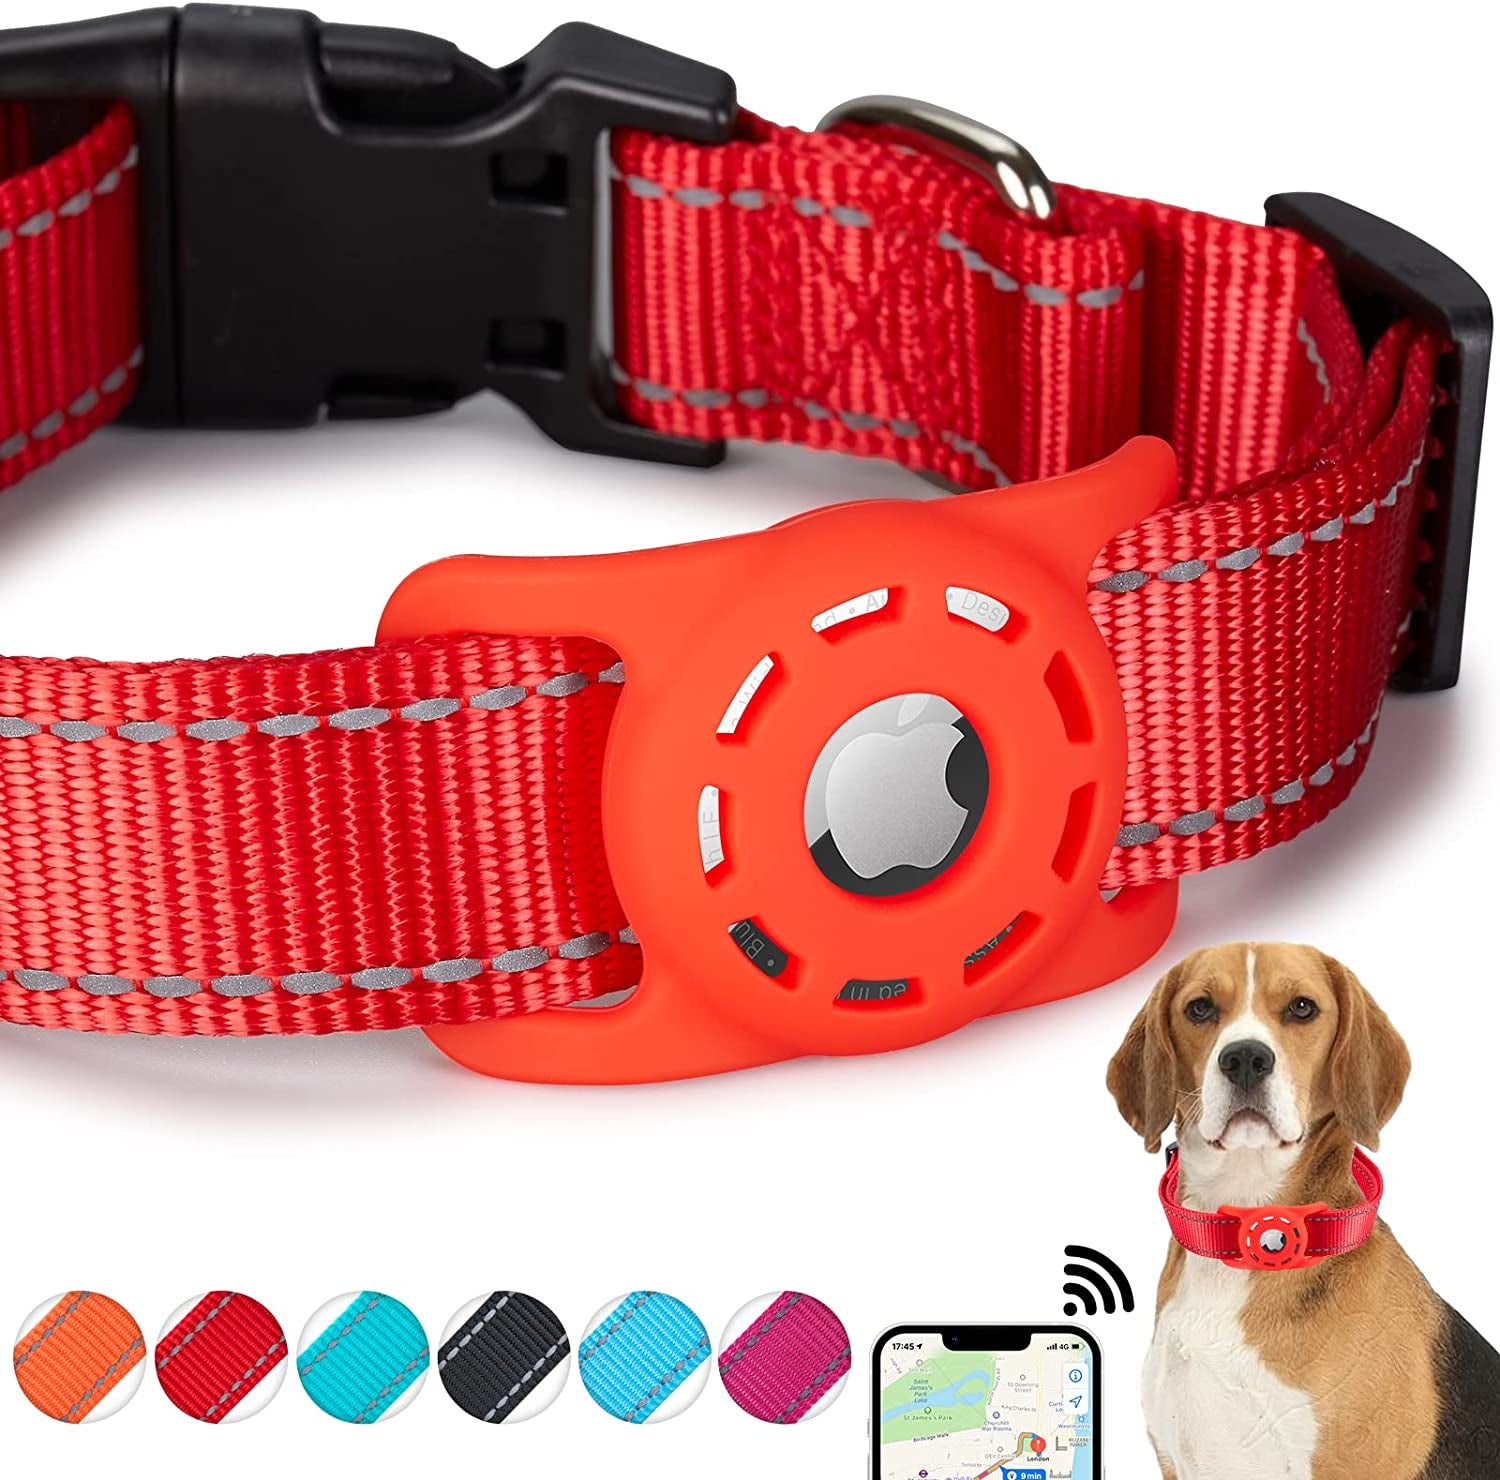 Orange LED Dog Tag for D-ring on Dog Collars